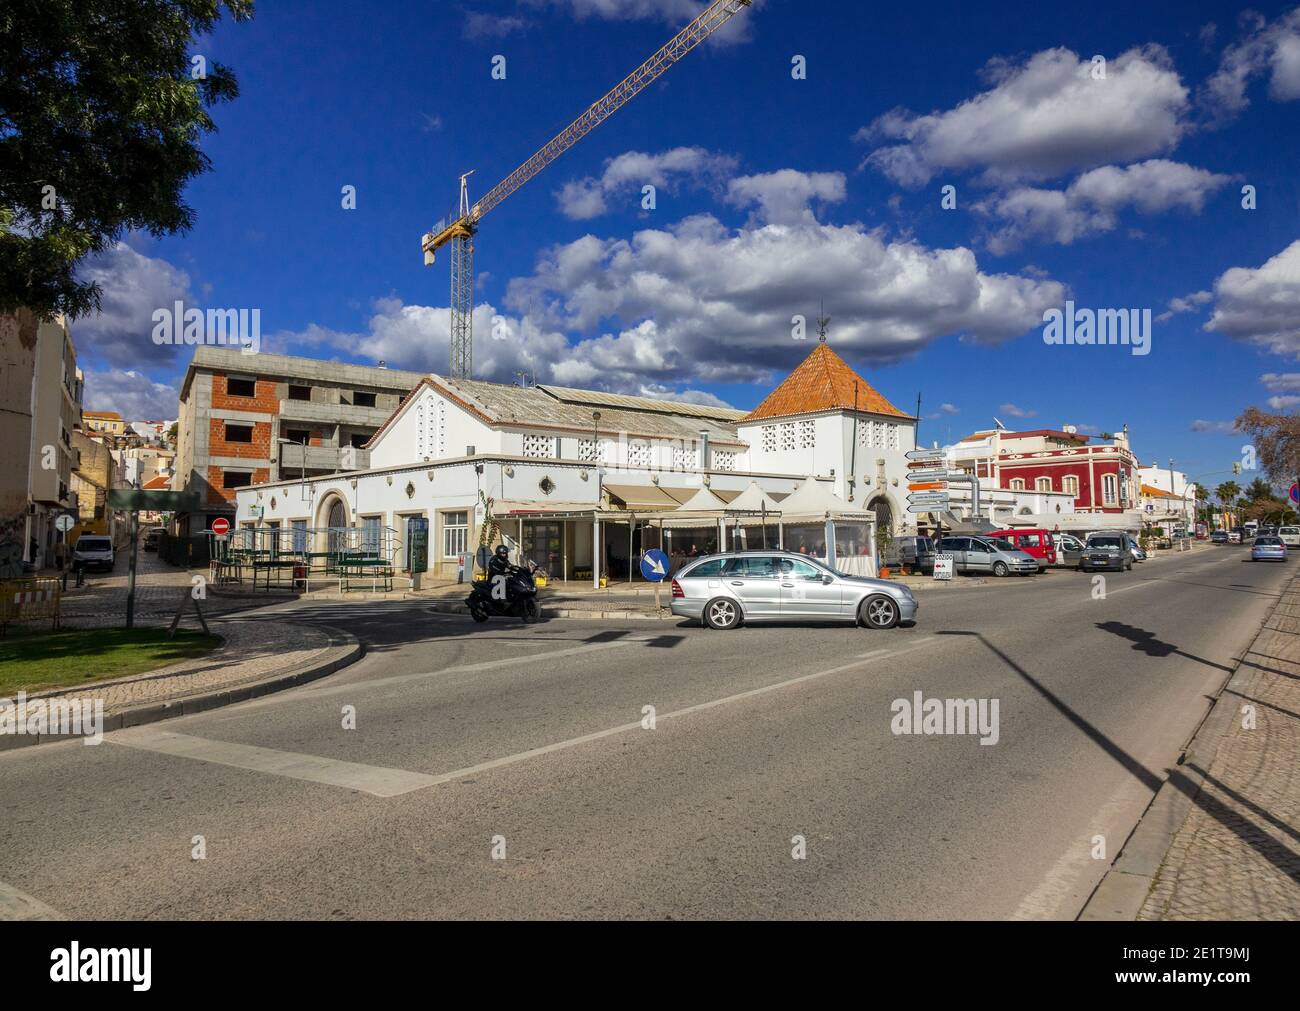 Silves Municipal Market Building travaux de construction et d'extérieur avec le bras-support Crane Silves Algarve Portugal Banque D'Images